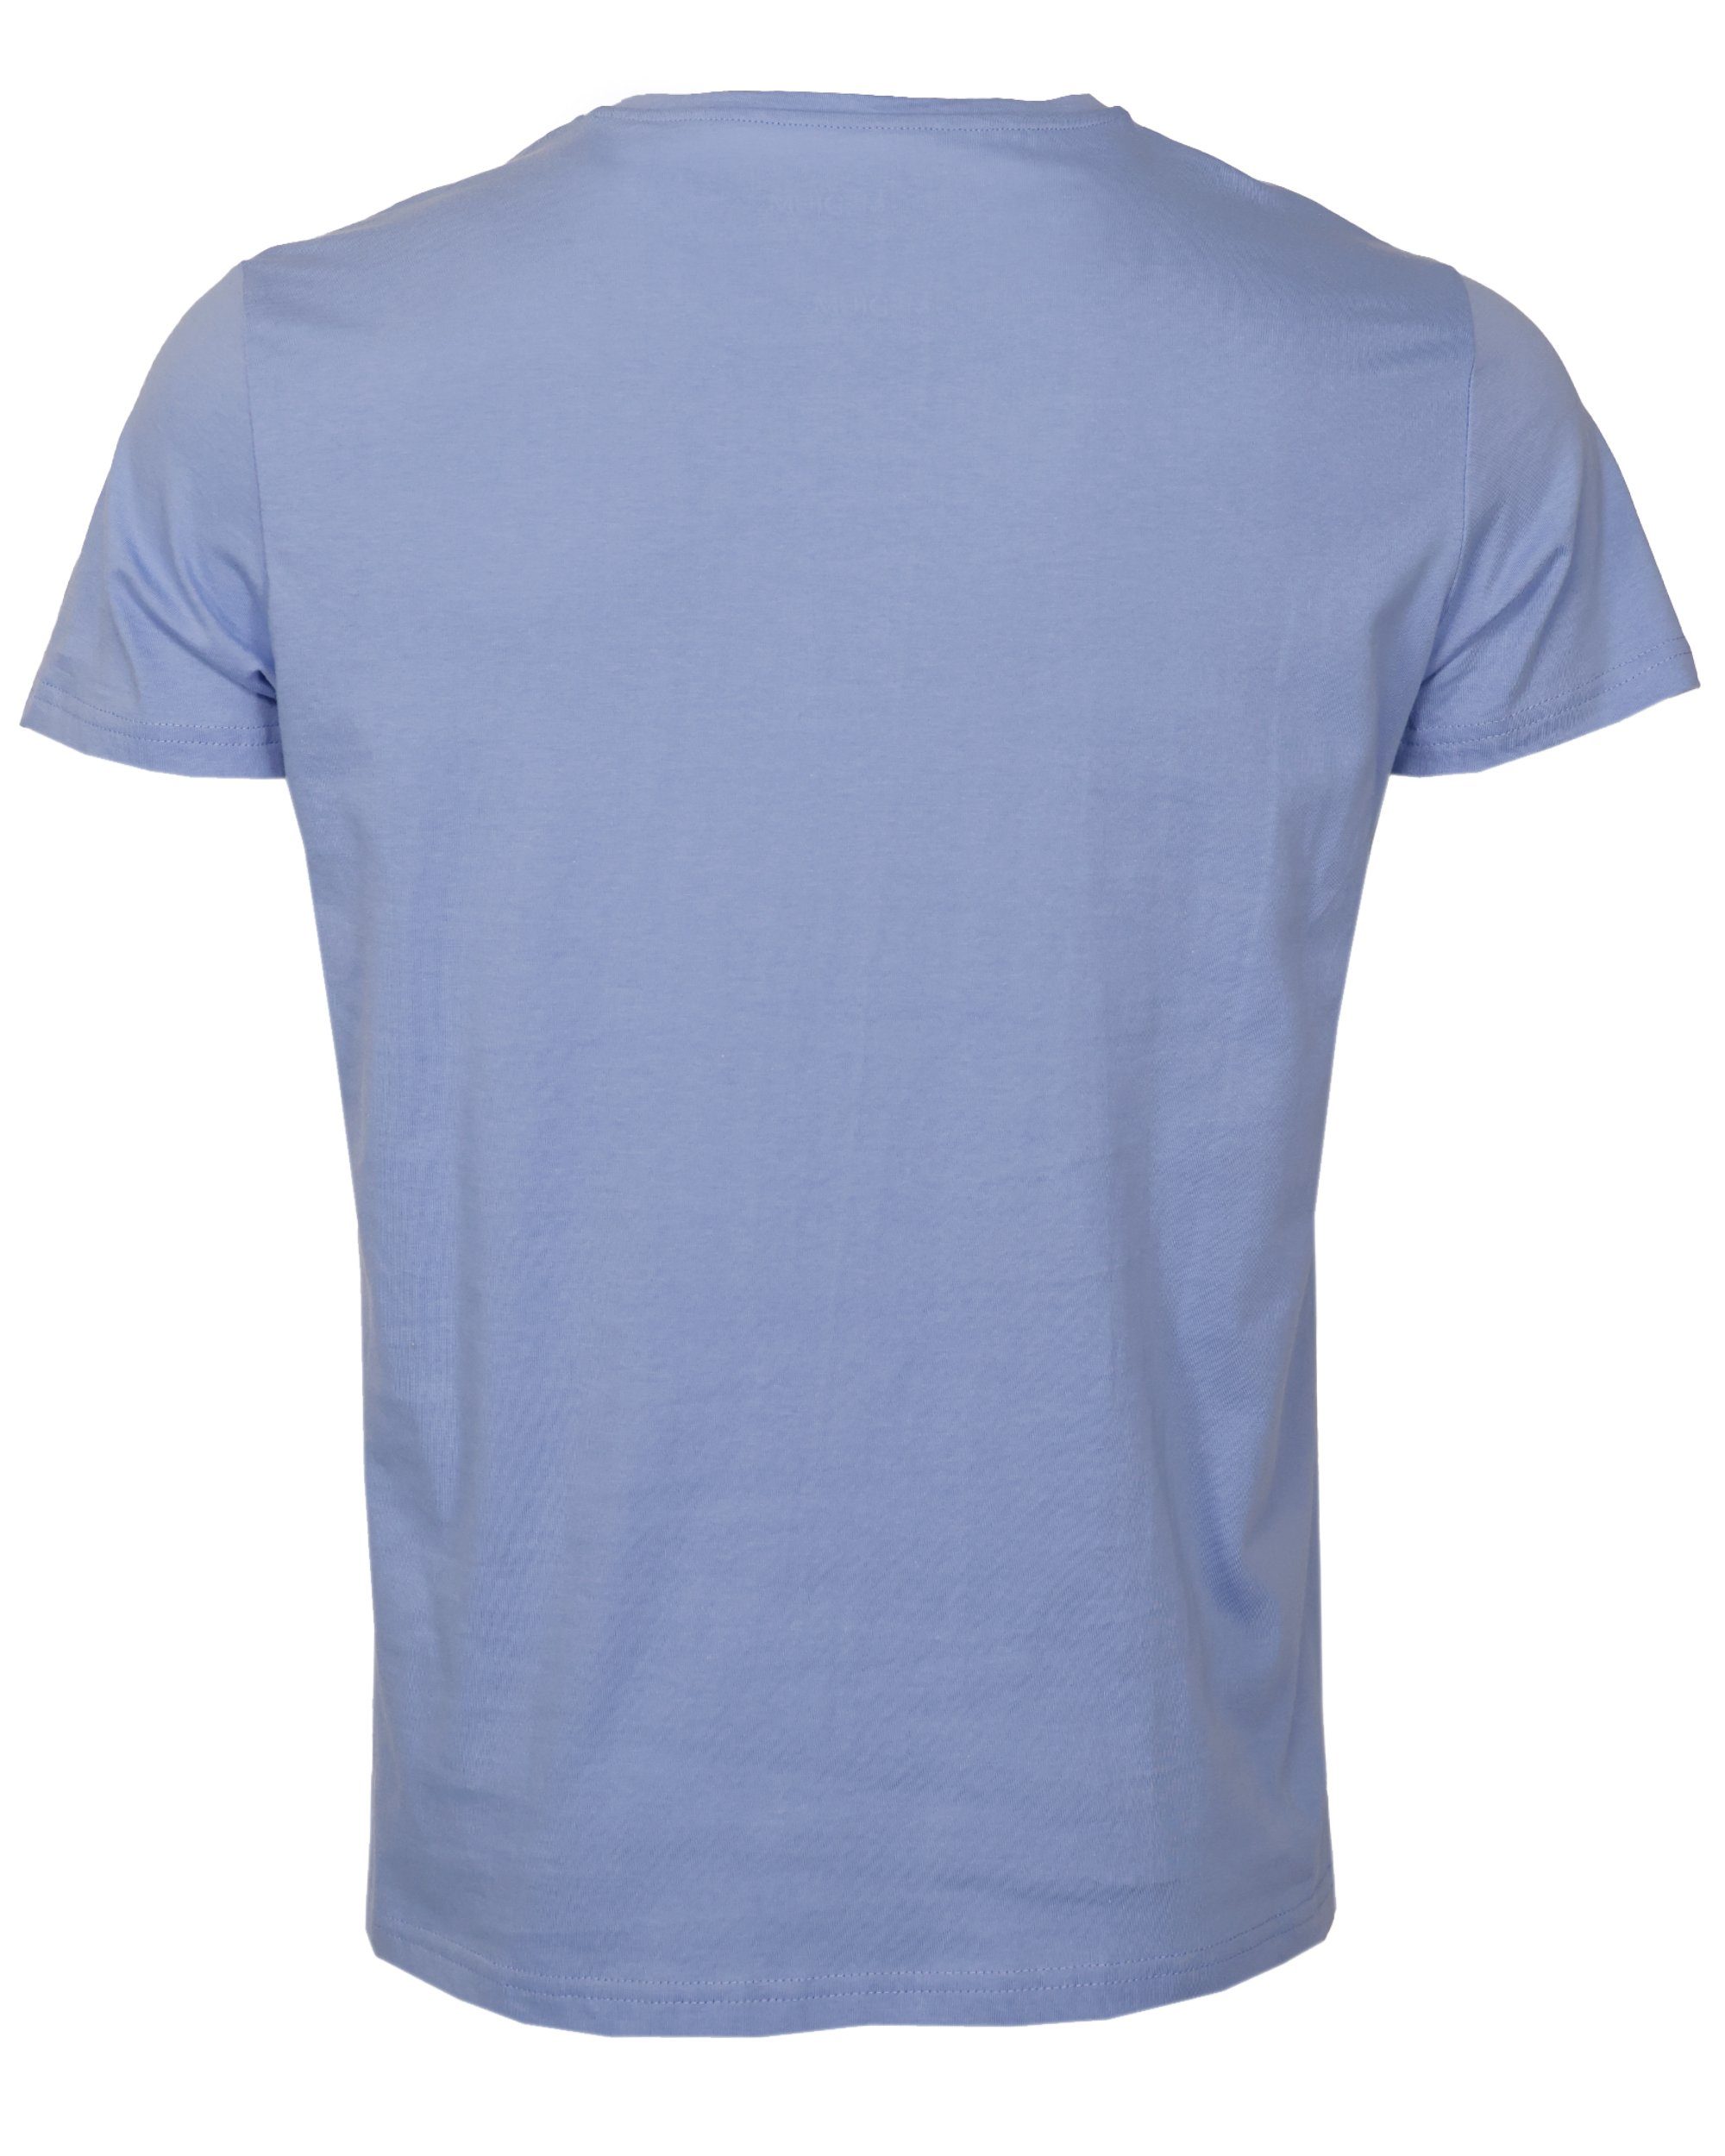 GUN TOP blue TG20213036 T-Shirt light